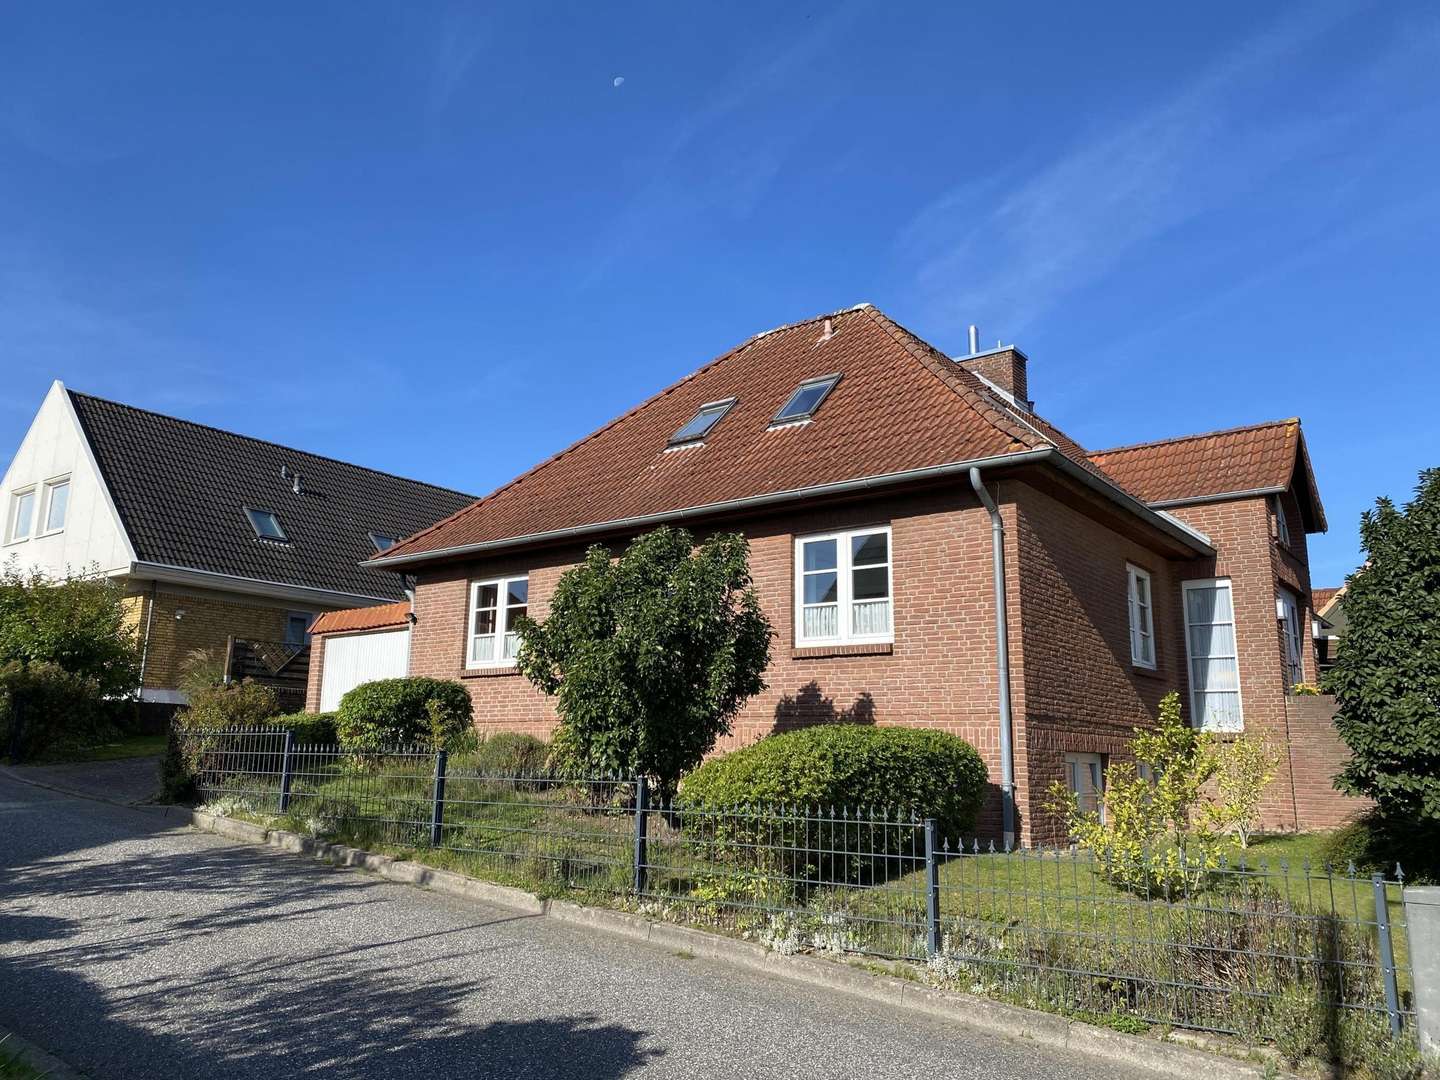 22841301-IMG_1297 - Zweifamilienhaus in 23774 Heiligenhafen mit 180m² kaufen